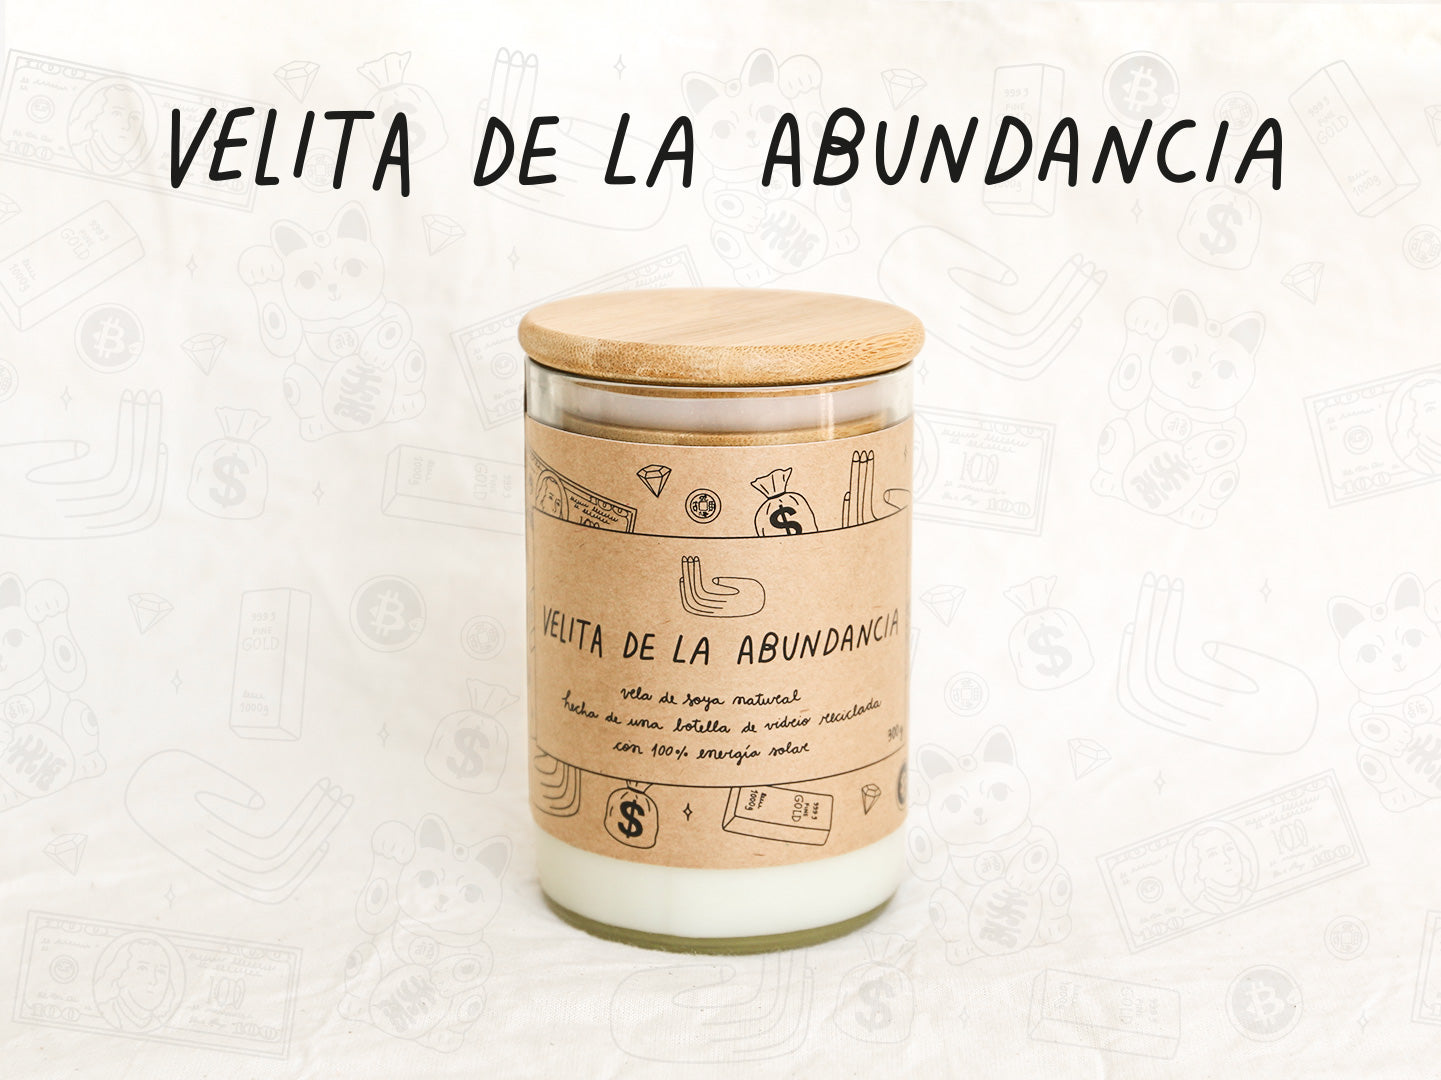 Velita de la Abundancia - Aroma Vainilla - Transparente